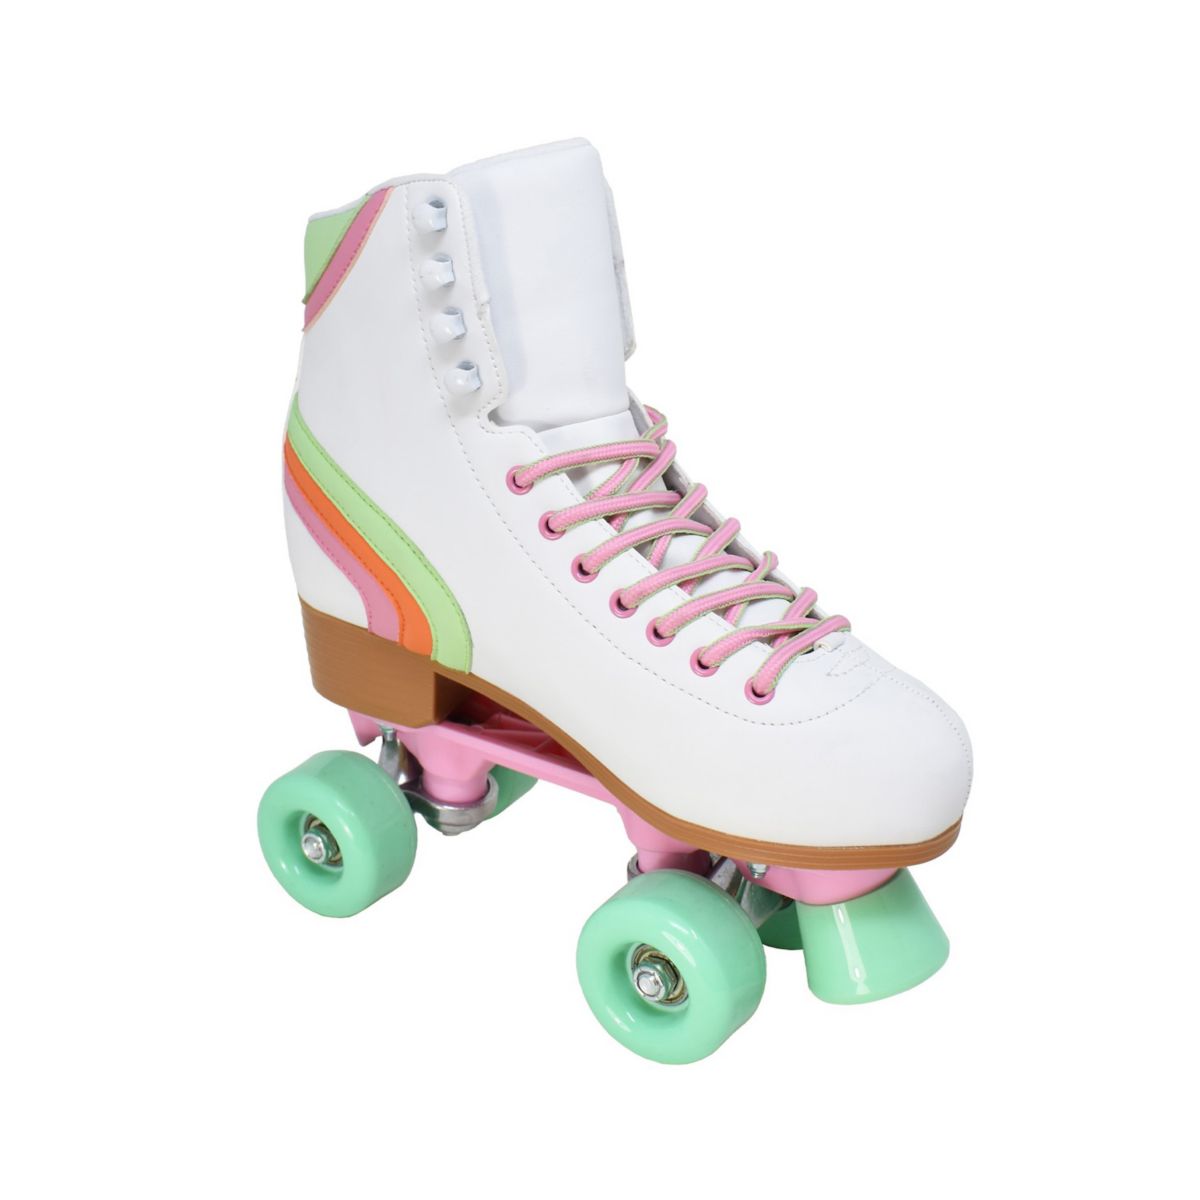 Женские ретро роликовые коньки Cosmic Skates Archie-45 Cosmic Skates